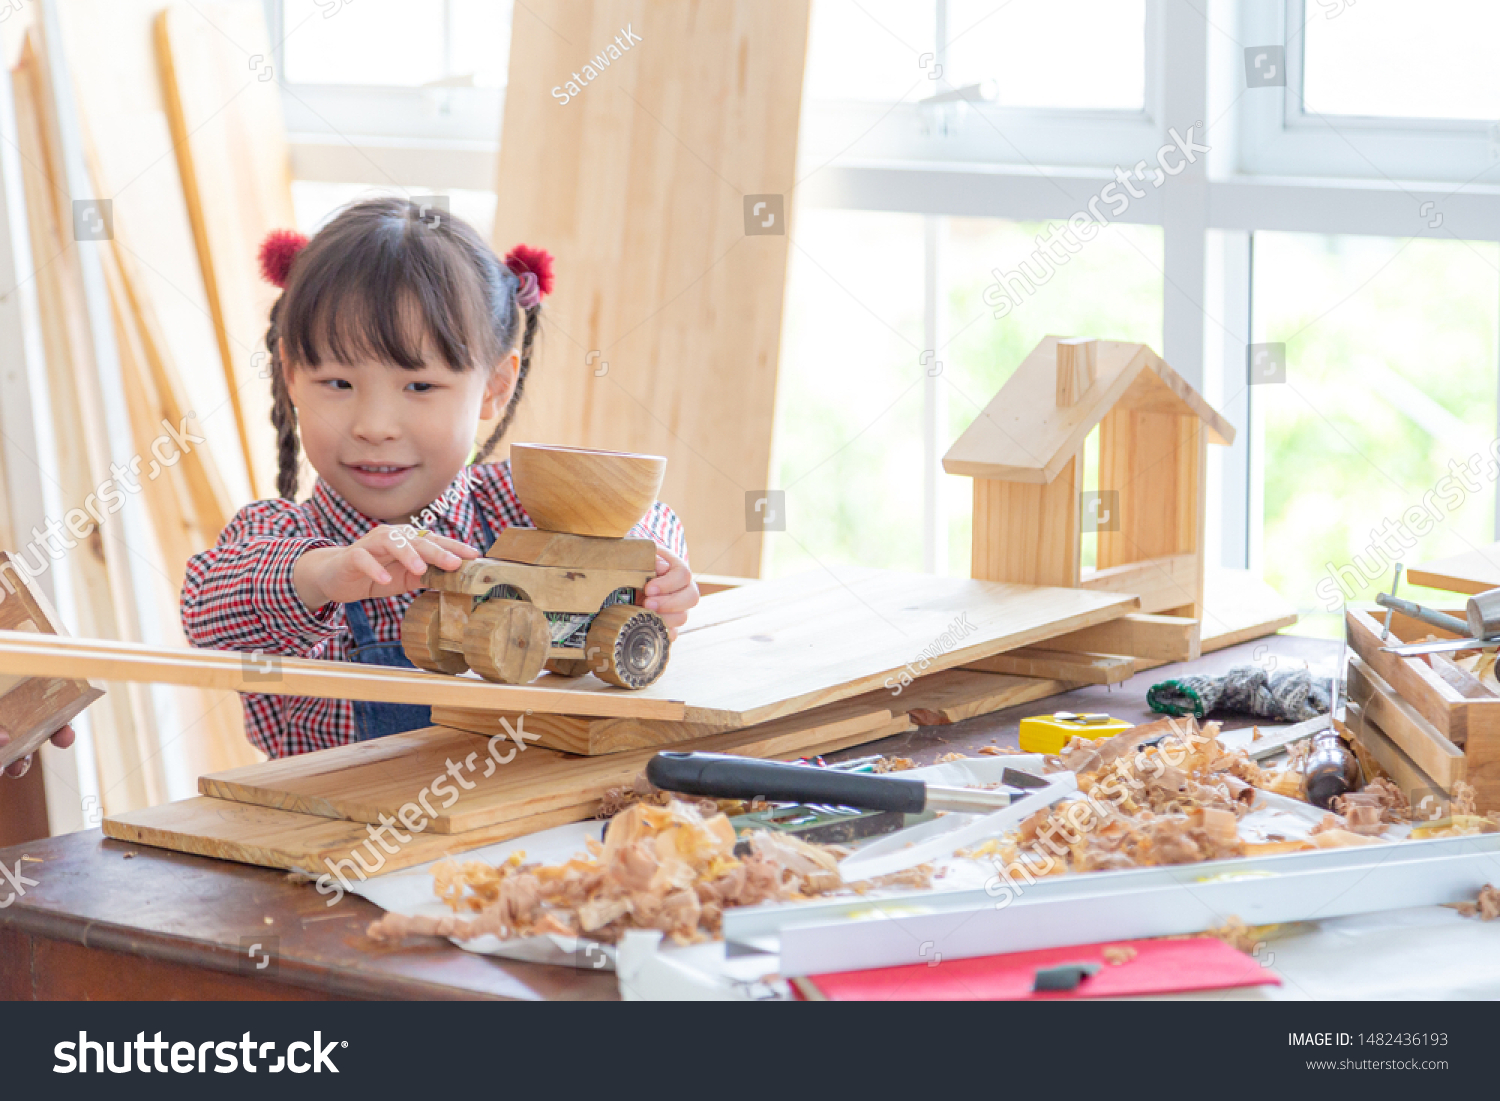 carpenter craft